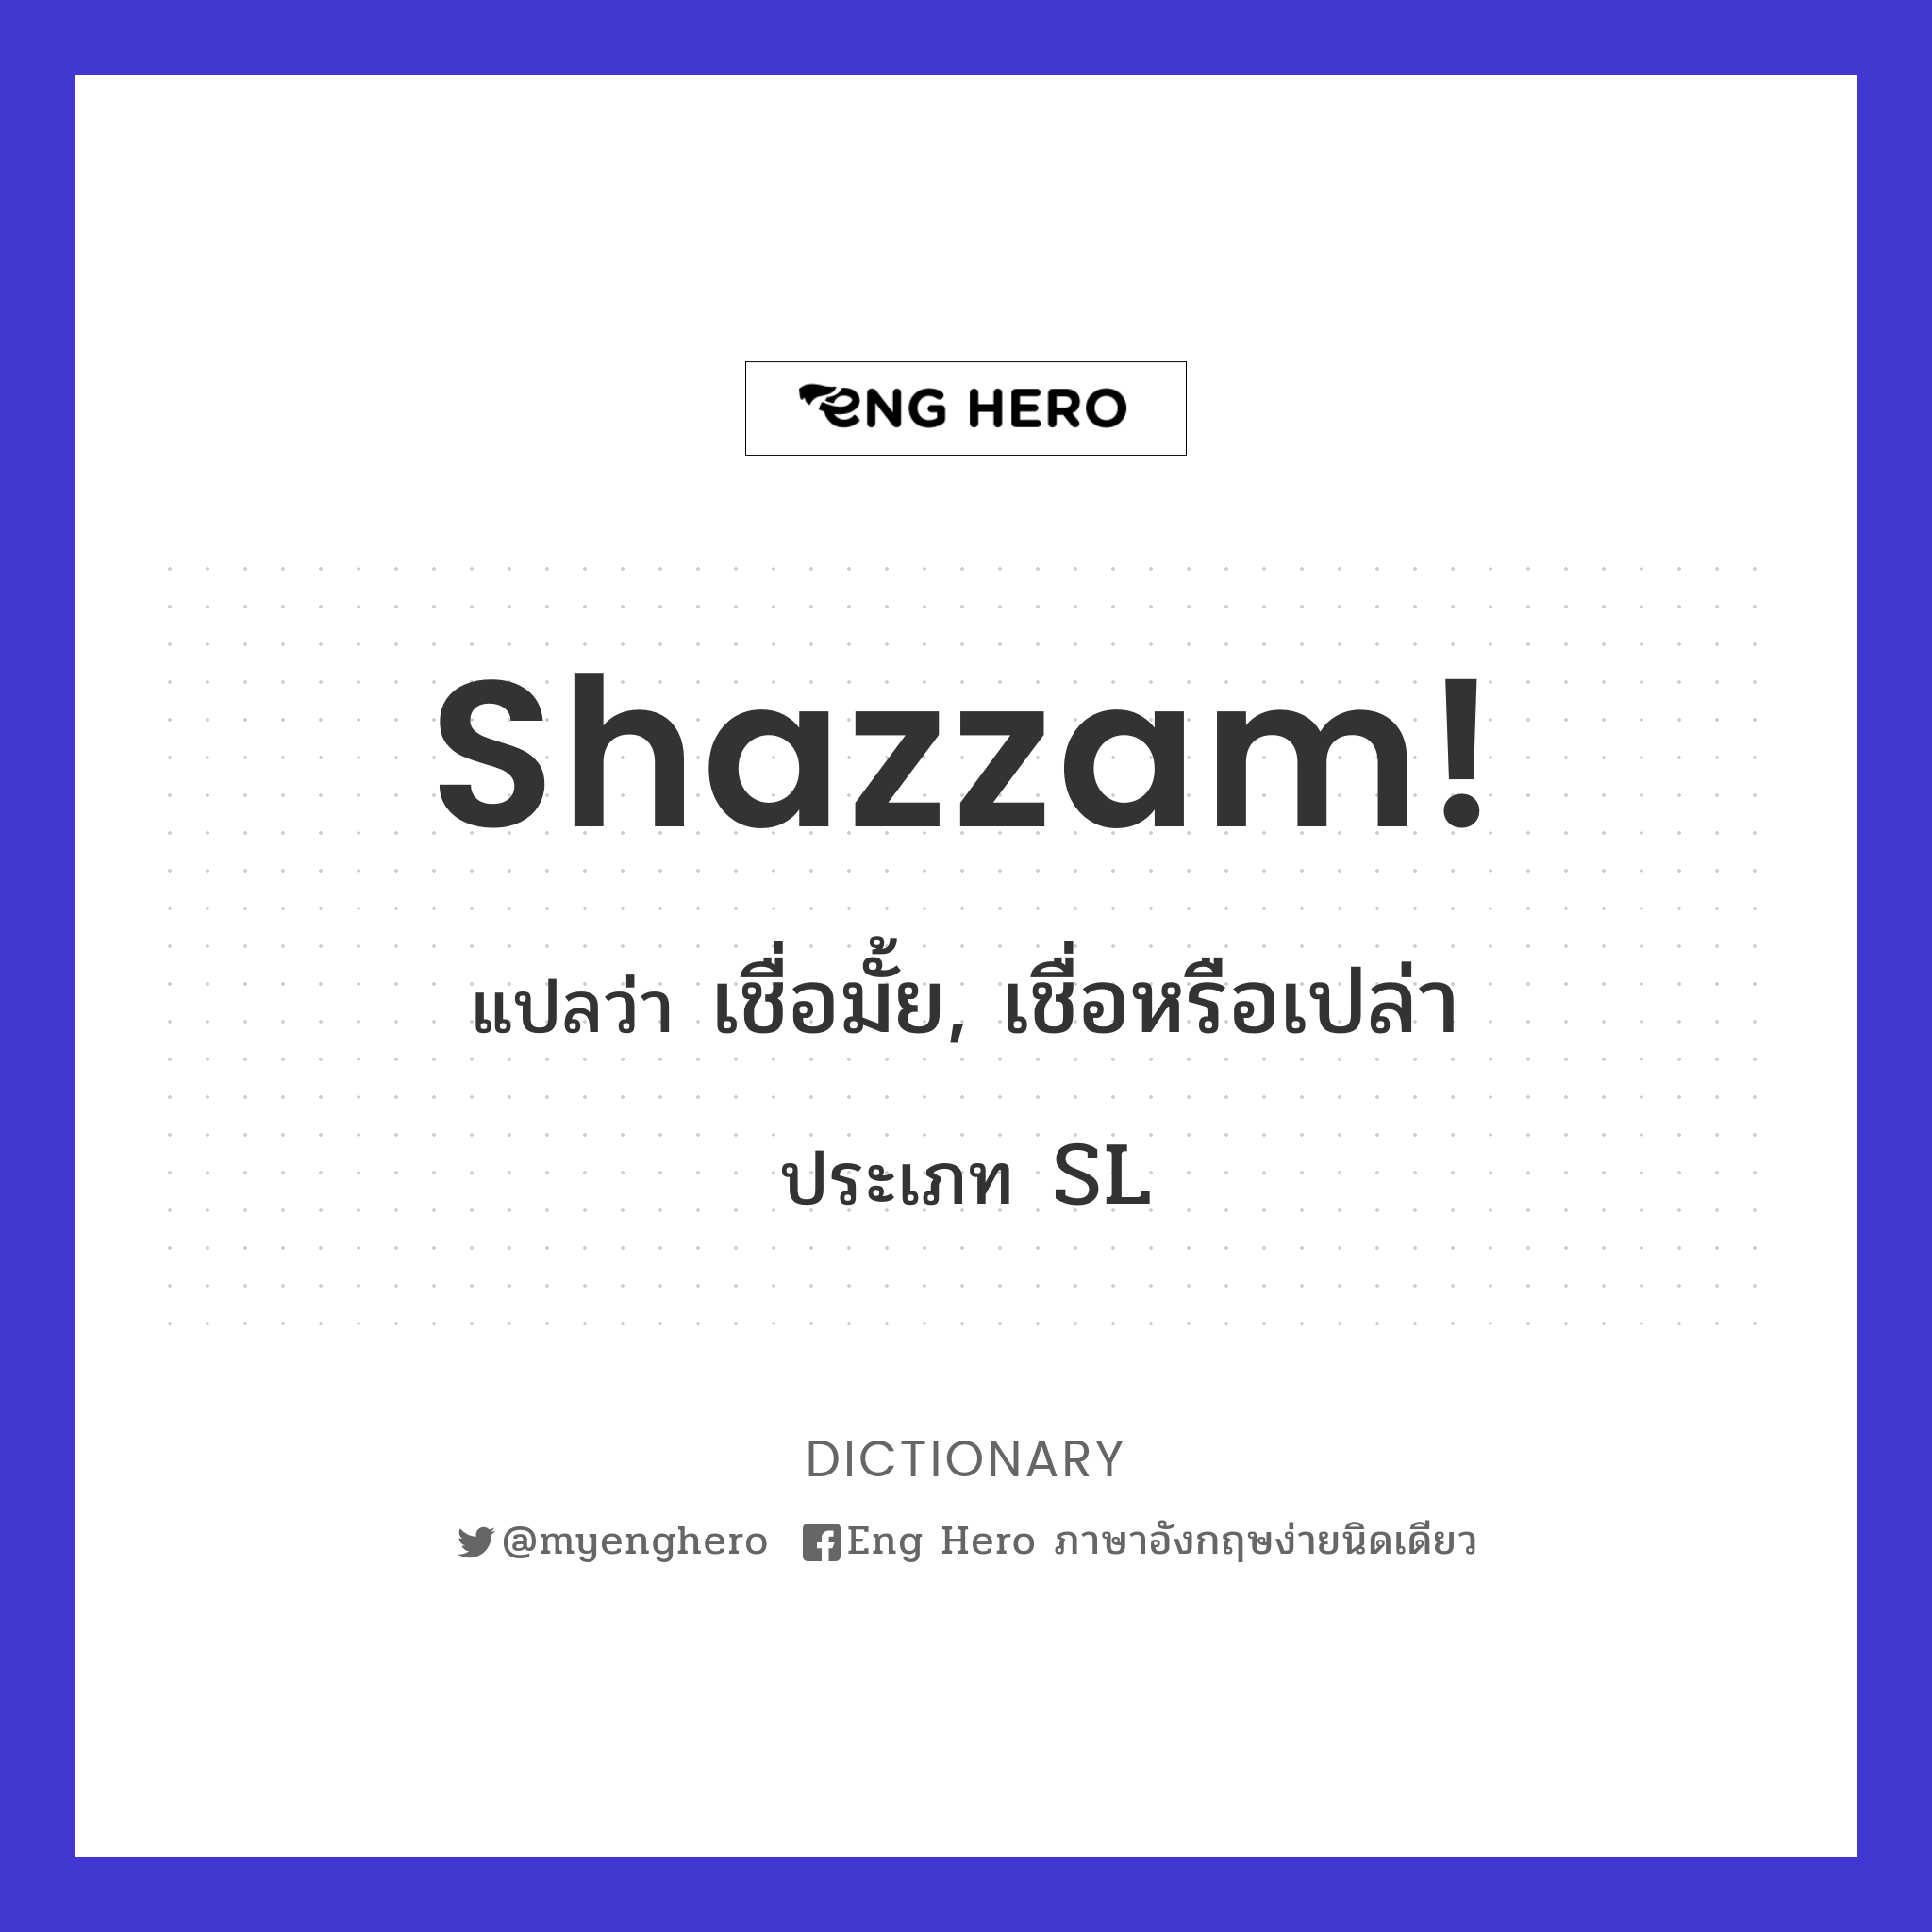 Shazzam!